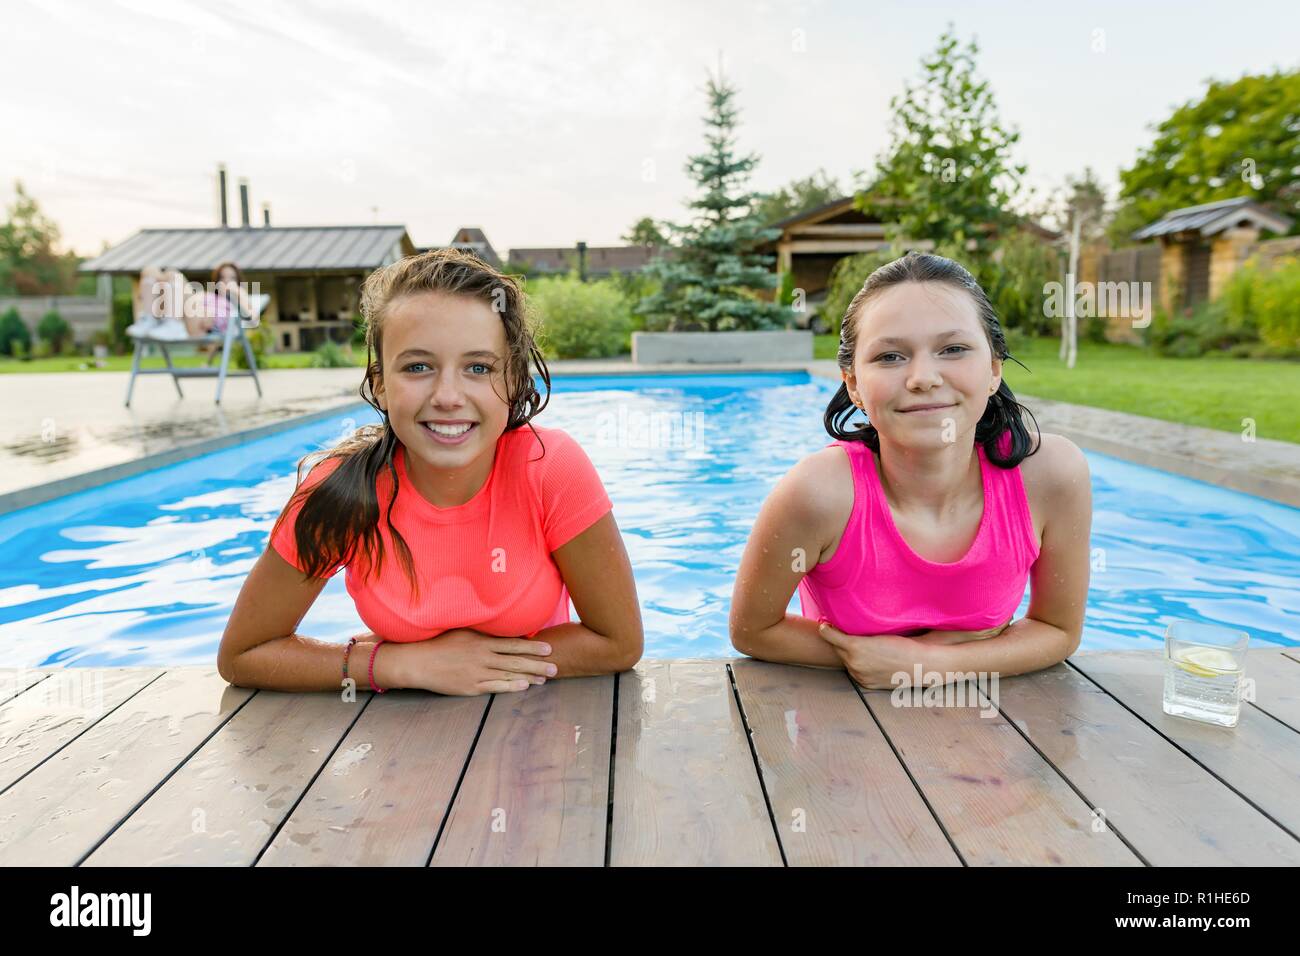 Dos jóvenes adolescentes divirtiéndose en la piscina, sonriendo mirando a la cámara. Foto de stock